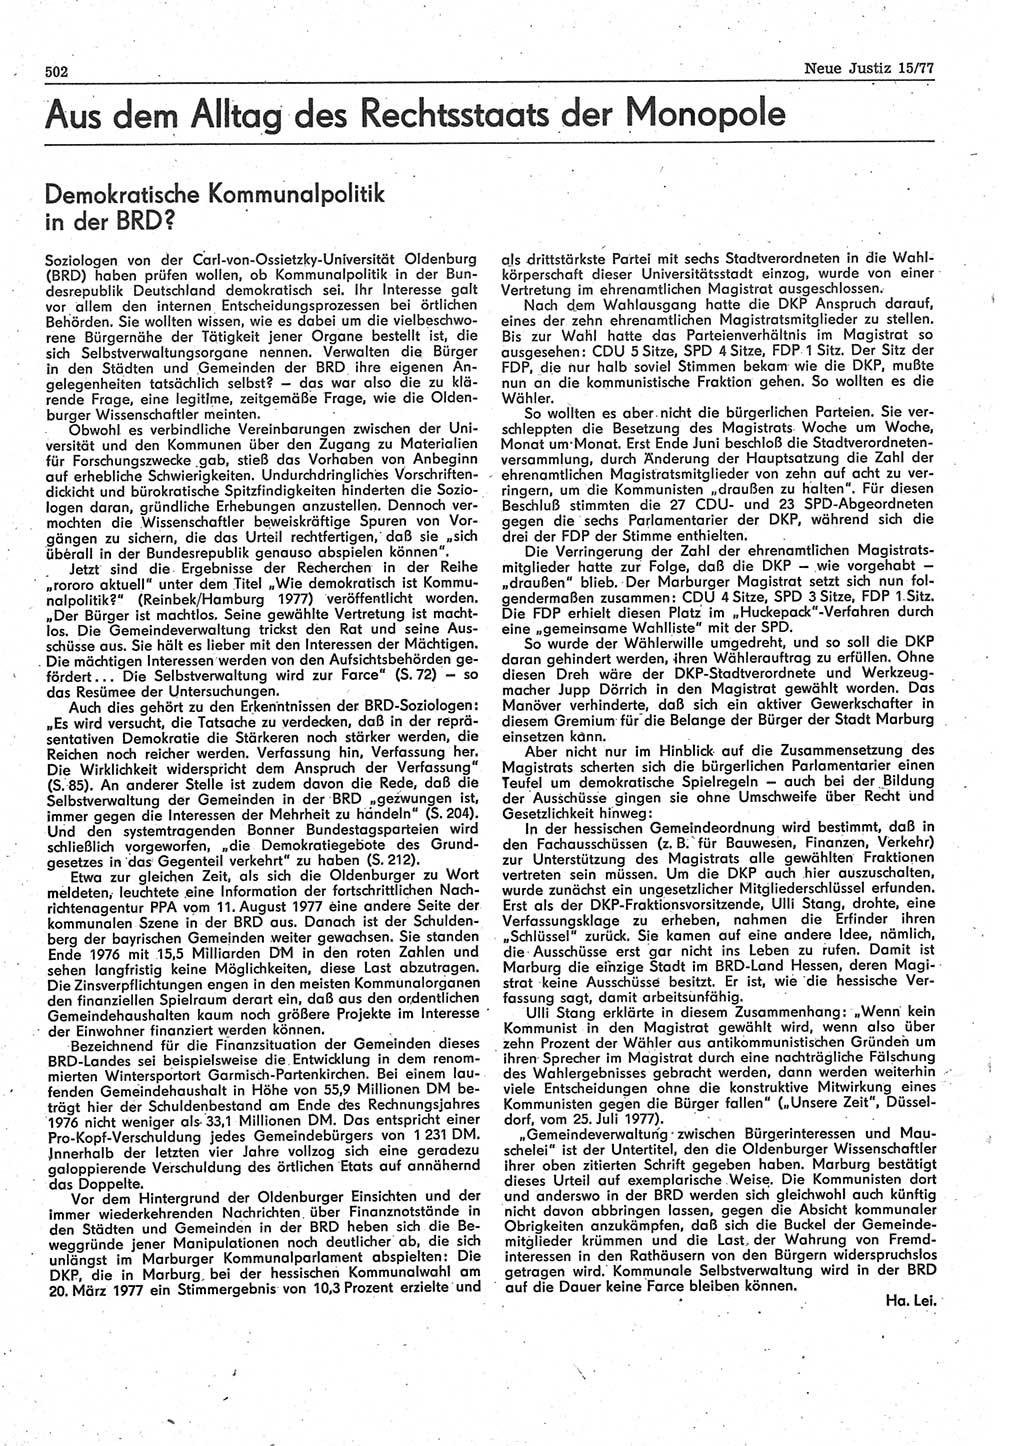 Neue Justiz (NJ), Zeitschrift für Recht und Rechtswissenschaft-Zeitschrift, sozialistisches Recht und Gesetzlichkeit, 31. Jahrgang 1977, Seite 502 (NJ DDR 1977, S. 502)